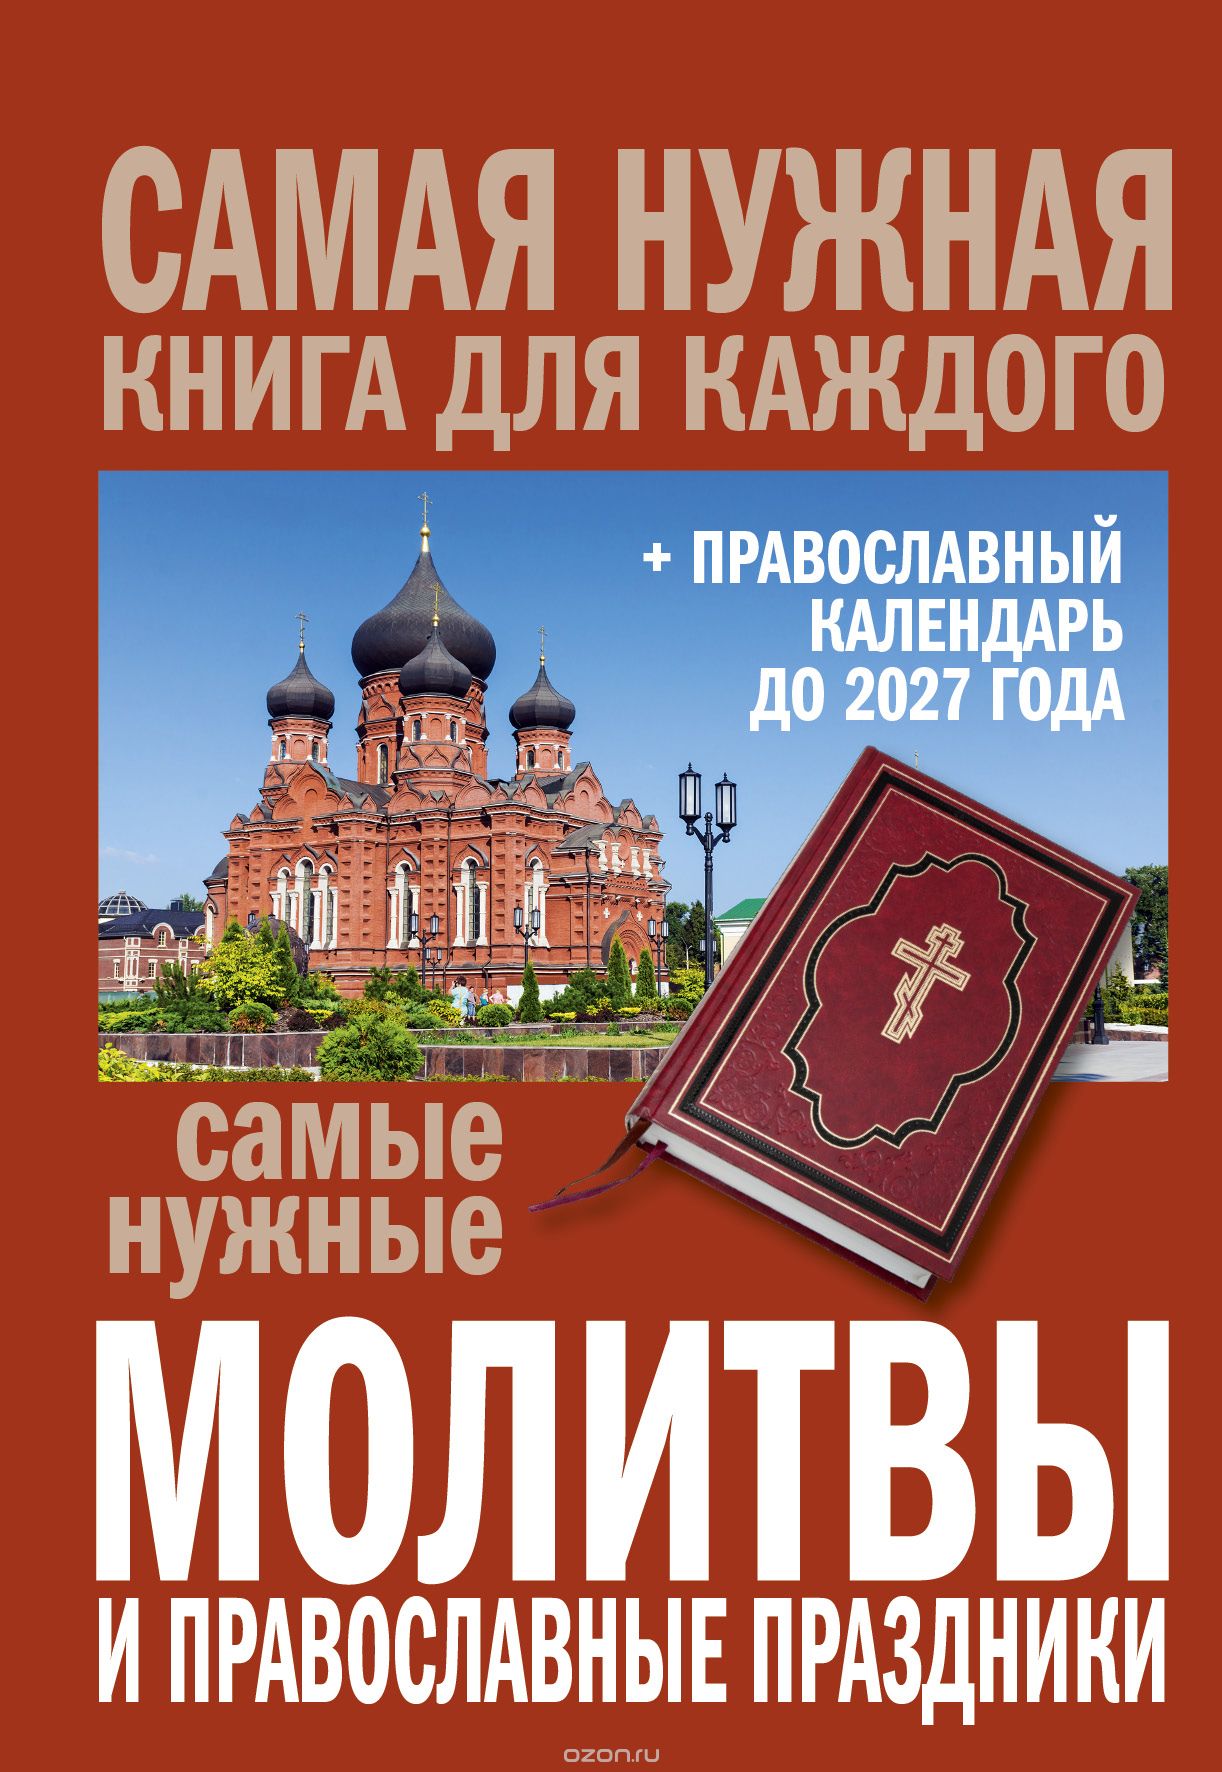 Скачать книгу "Самые нужные молитвы и православные праздники + православный календарь до 2027 года"